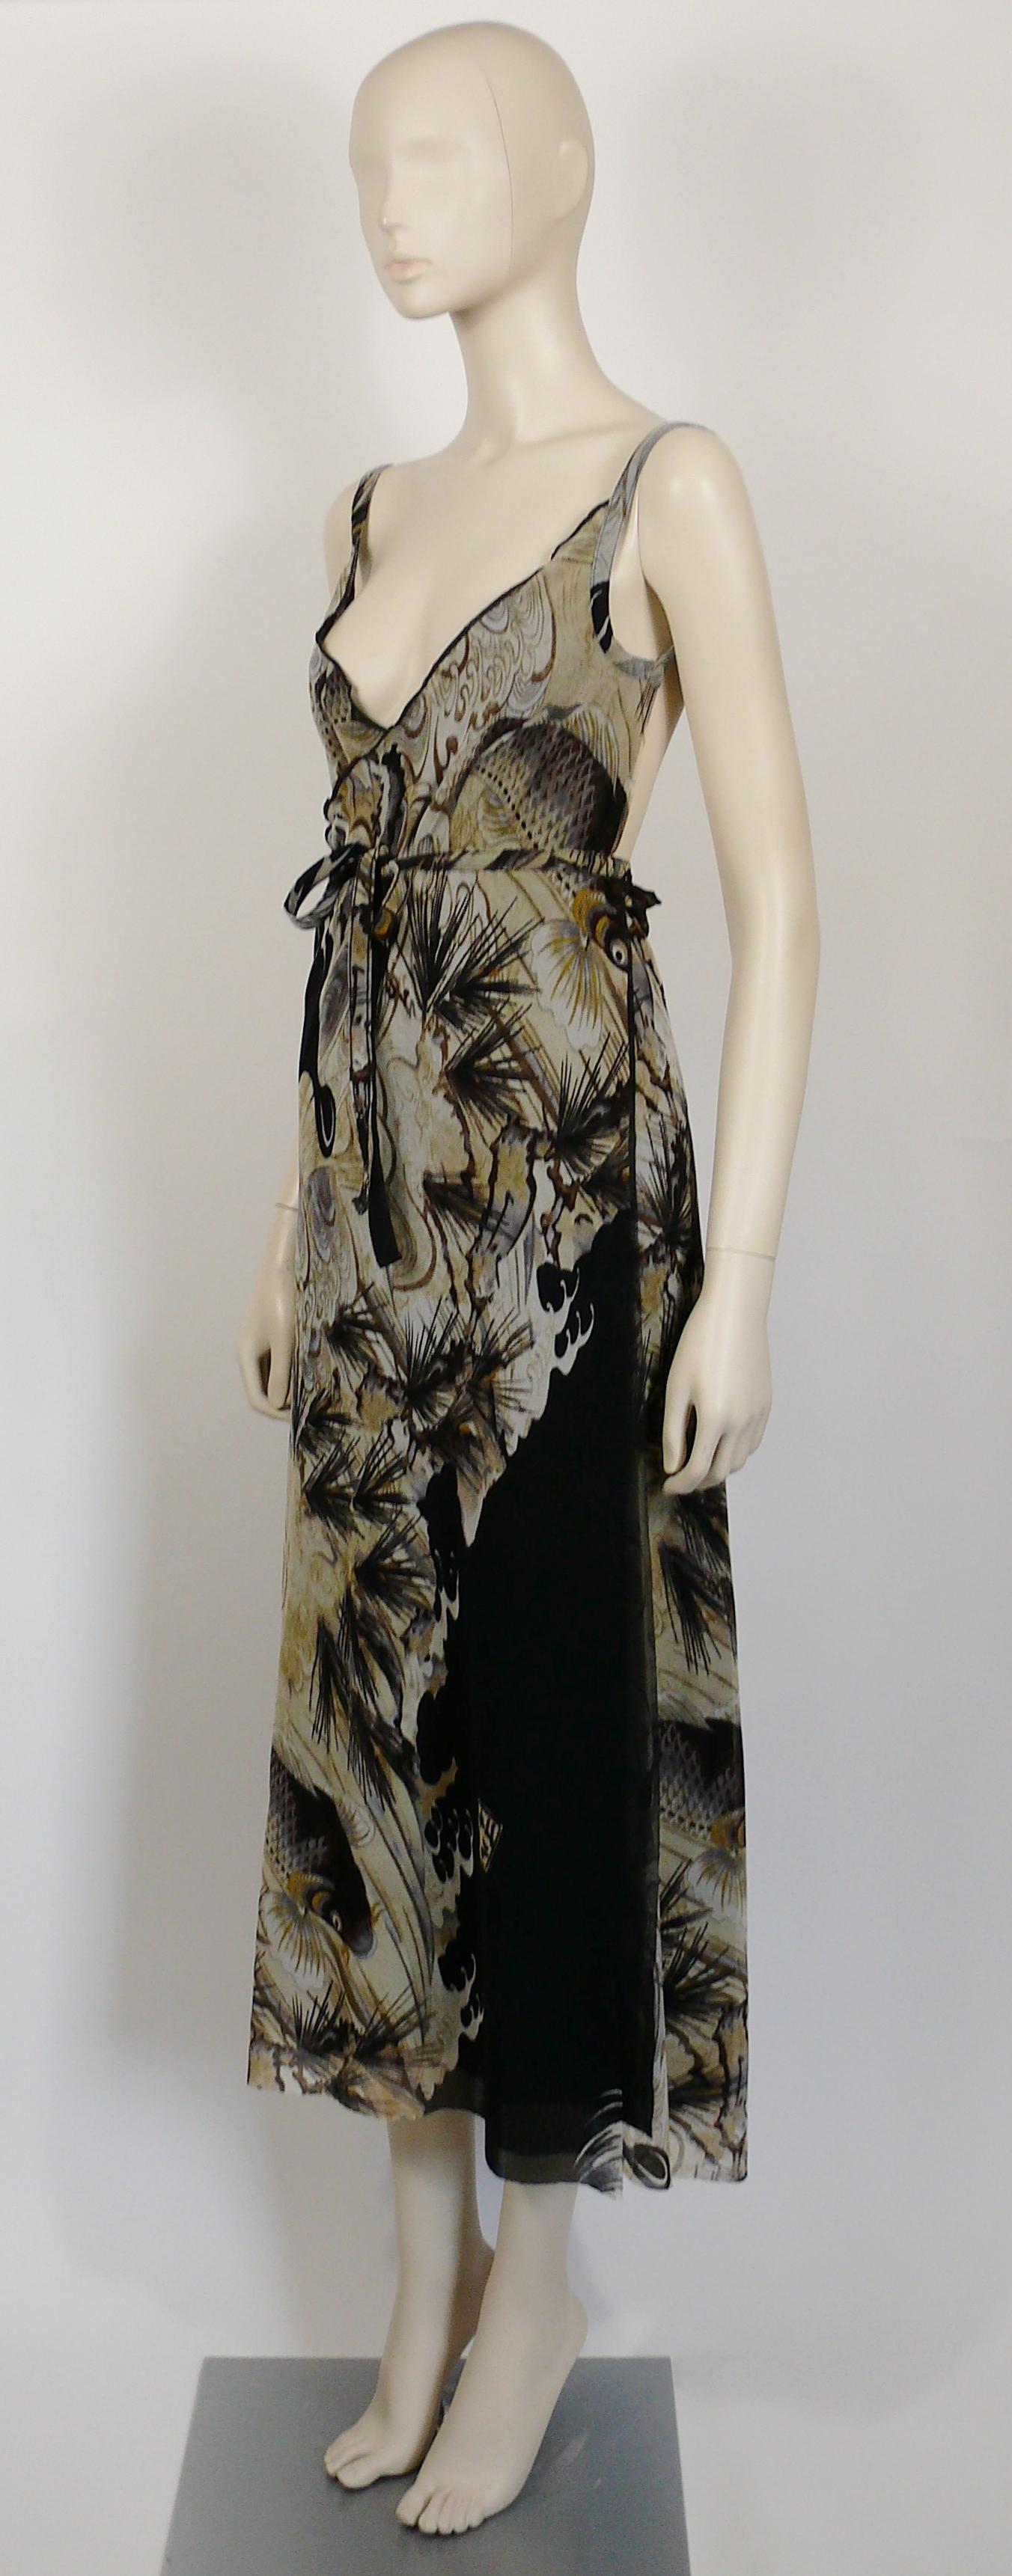 jean paul gaultier vintage dress